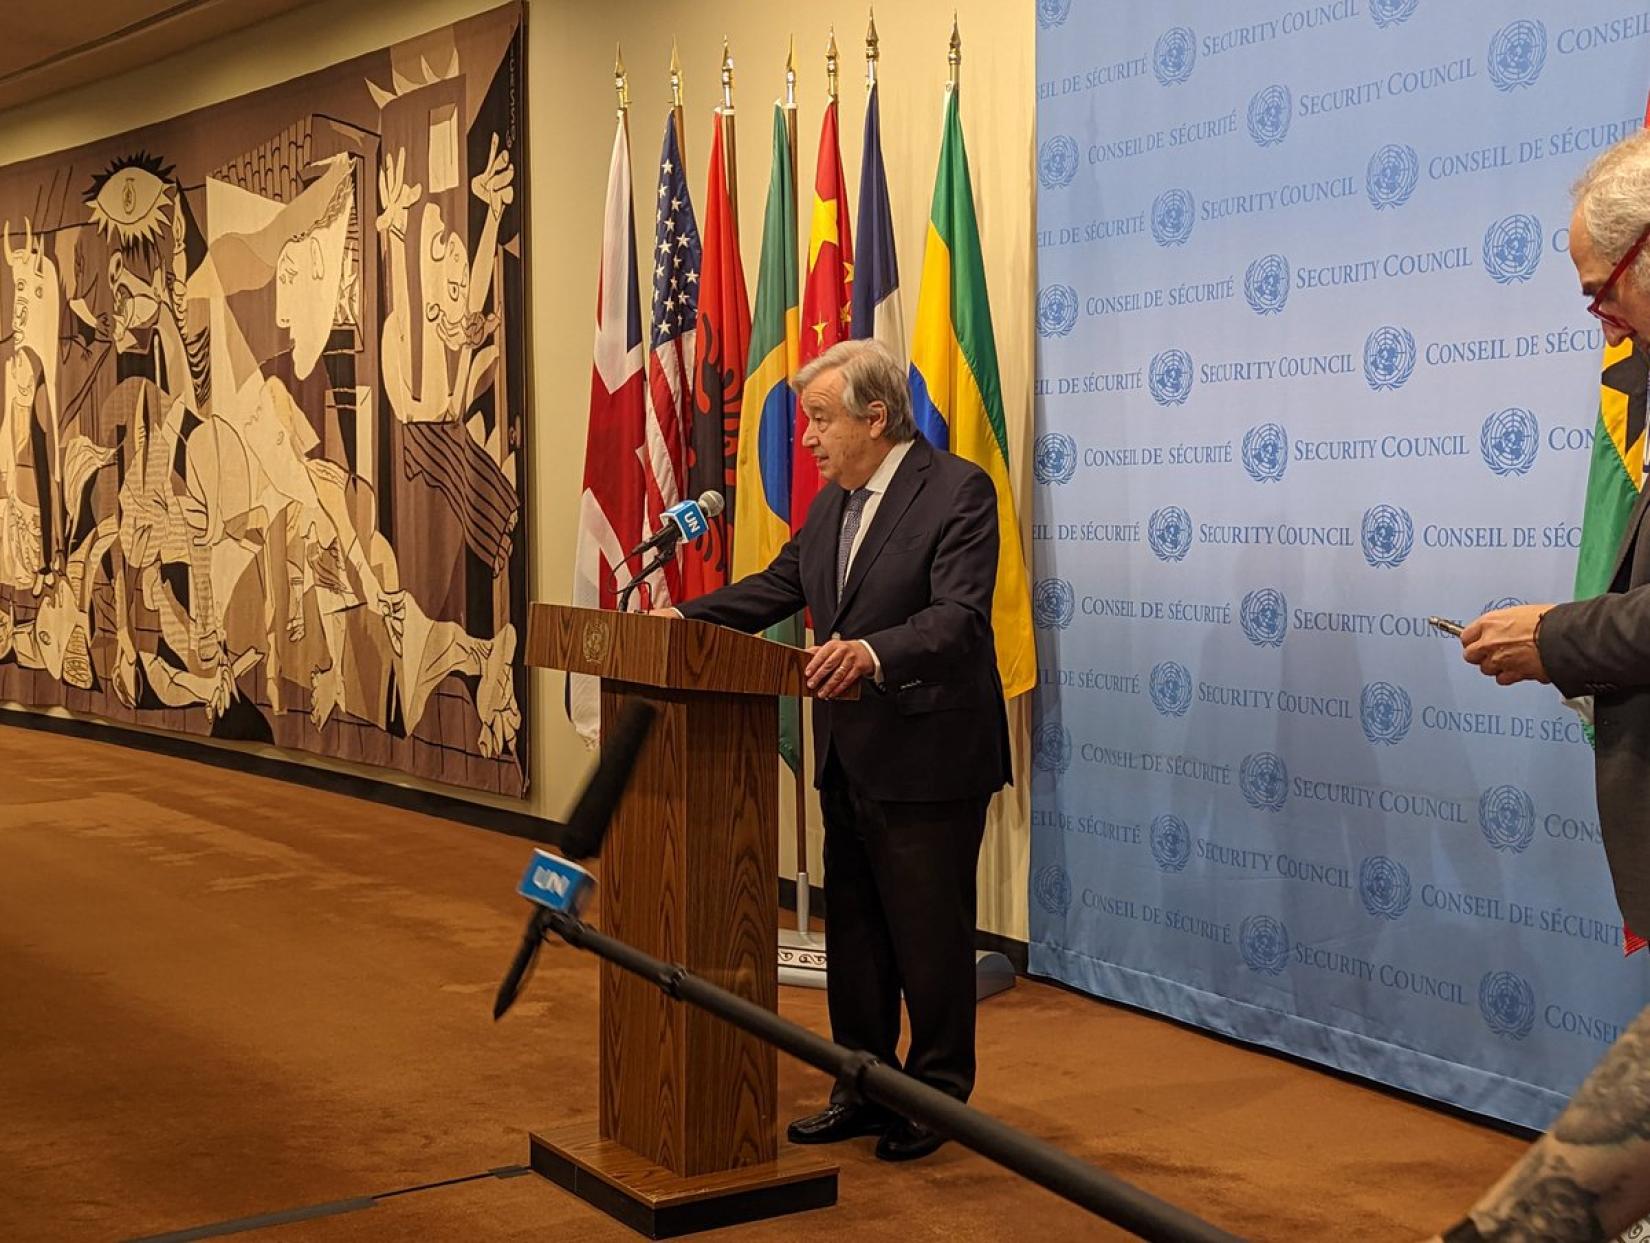 António Guterres fez o anúncio nesta quinta-feira, em coletiva de imprensa na sede da organização em Nova Iorque